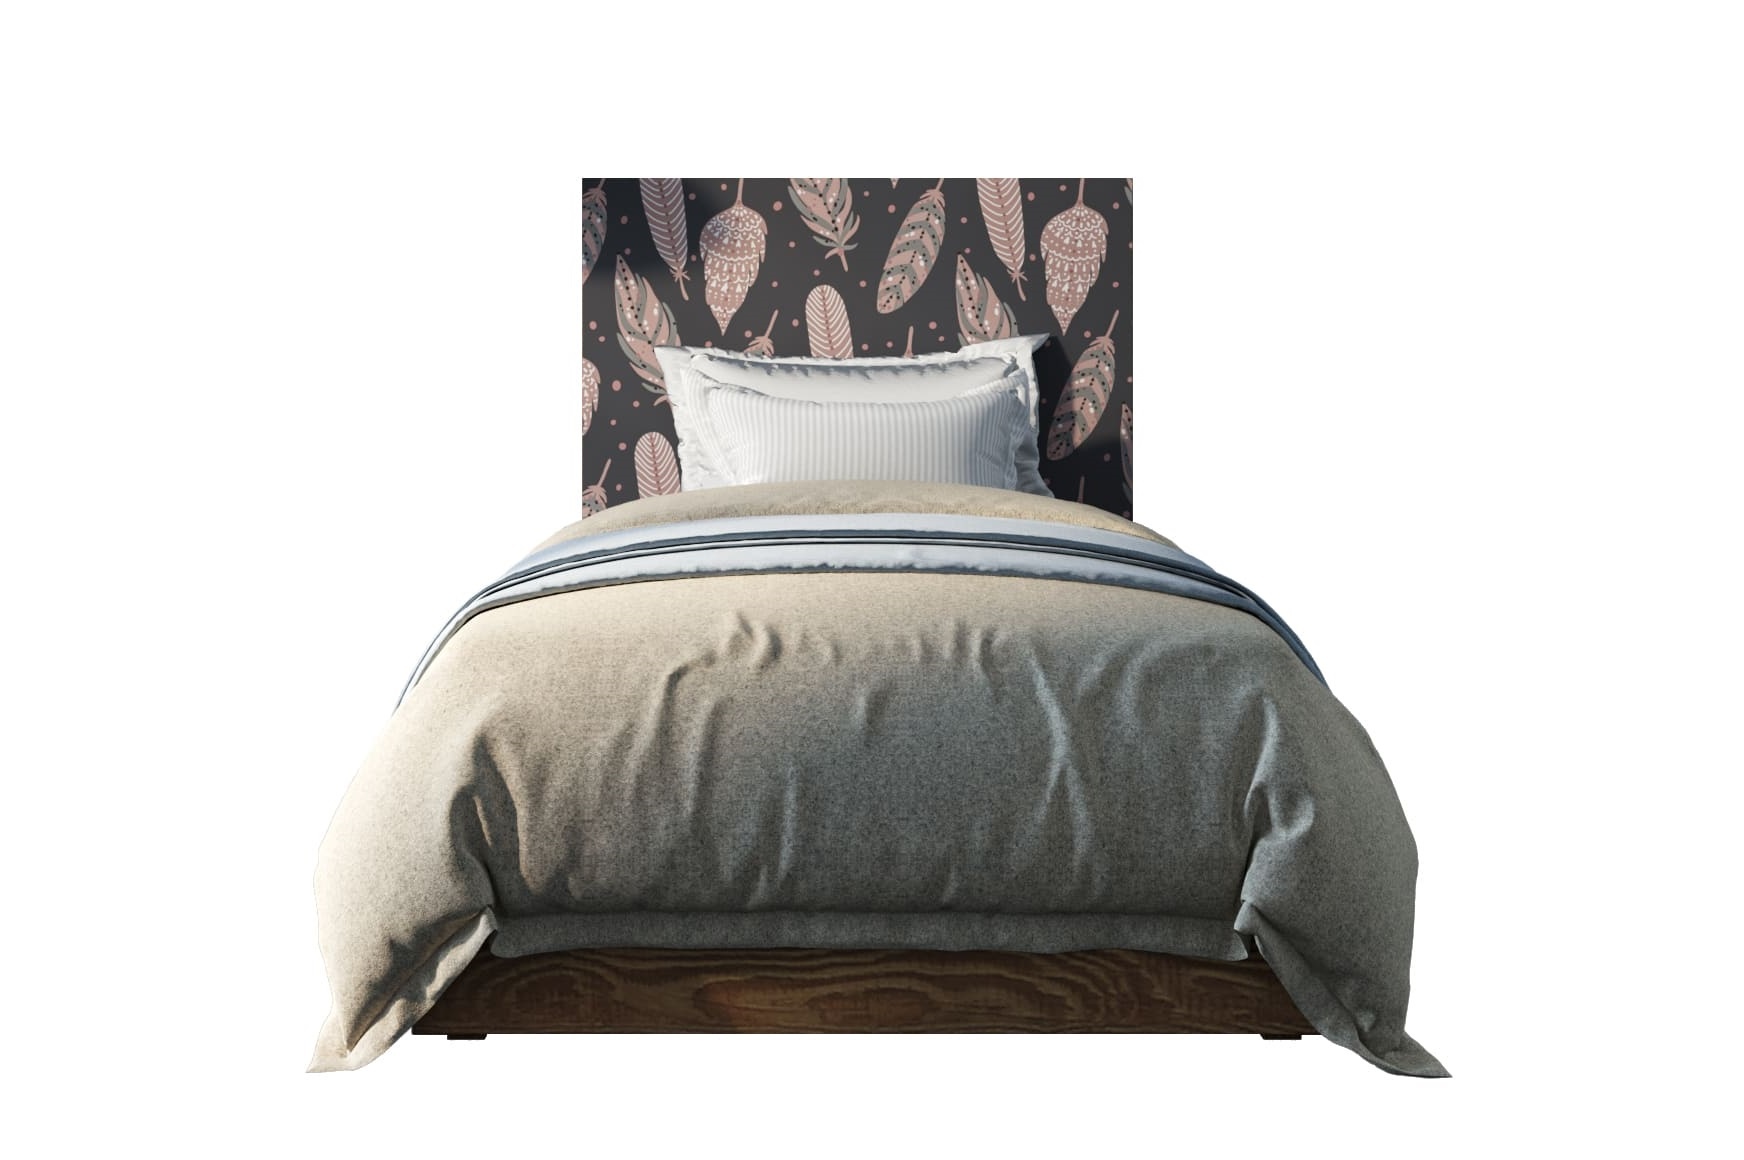 Кровать berber etg-home мультиколор 120x140x200 см.